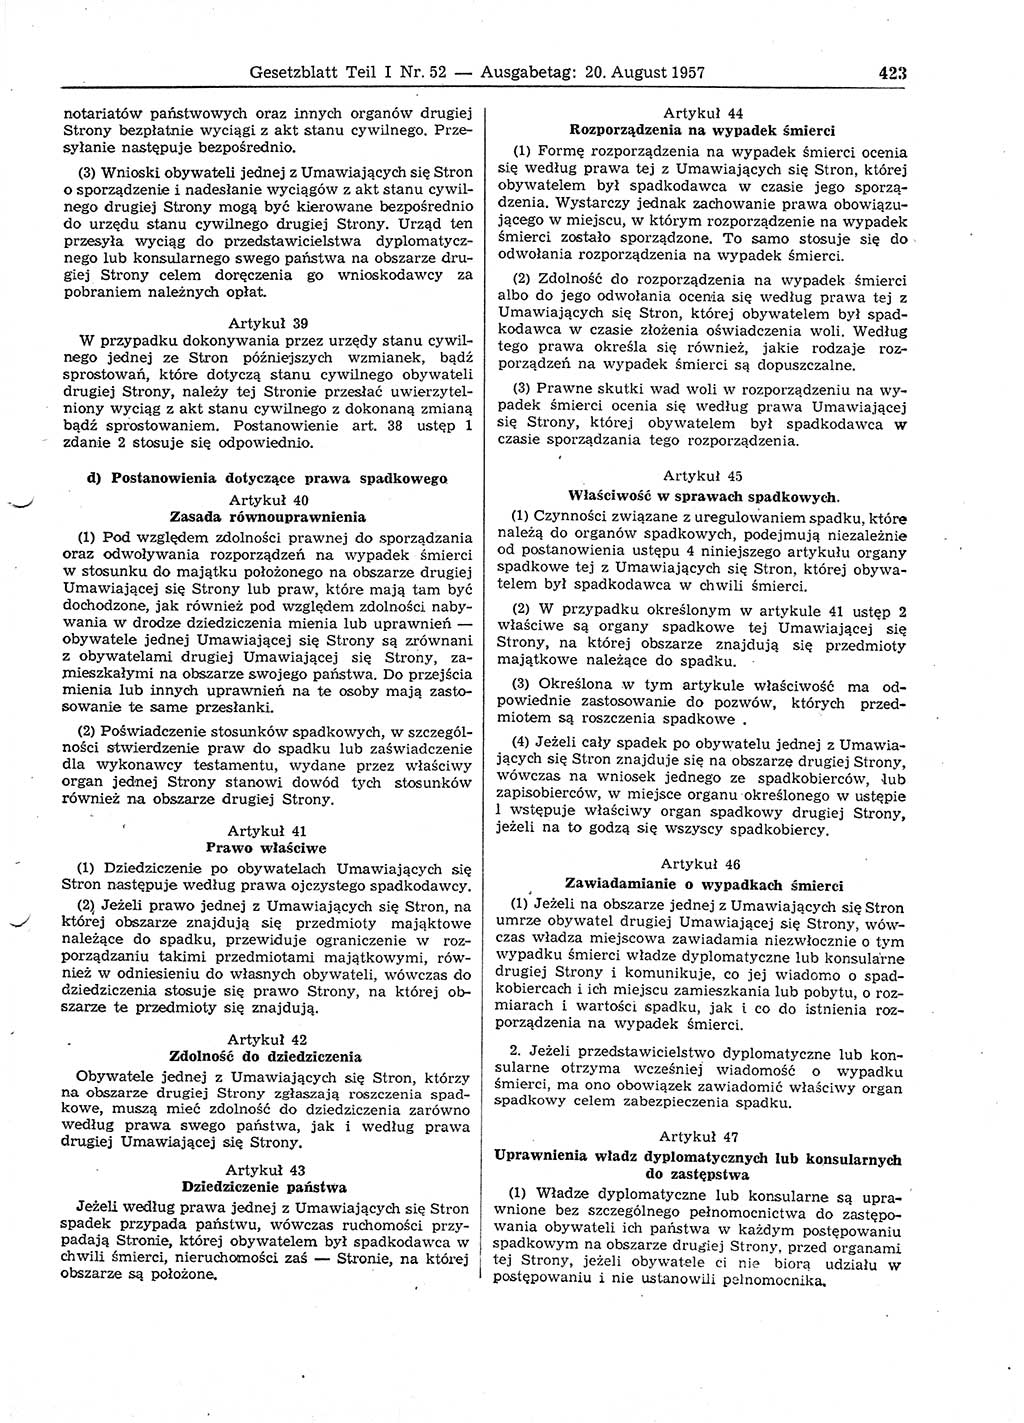 Gesetzblatt (GBl.) der Deutschen Demokratischen Republik (DDR) Teil Ⅰ 1957, Seite 423 (GBl. DDR Ⅰ 1957, S. 423)